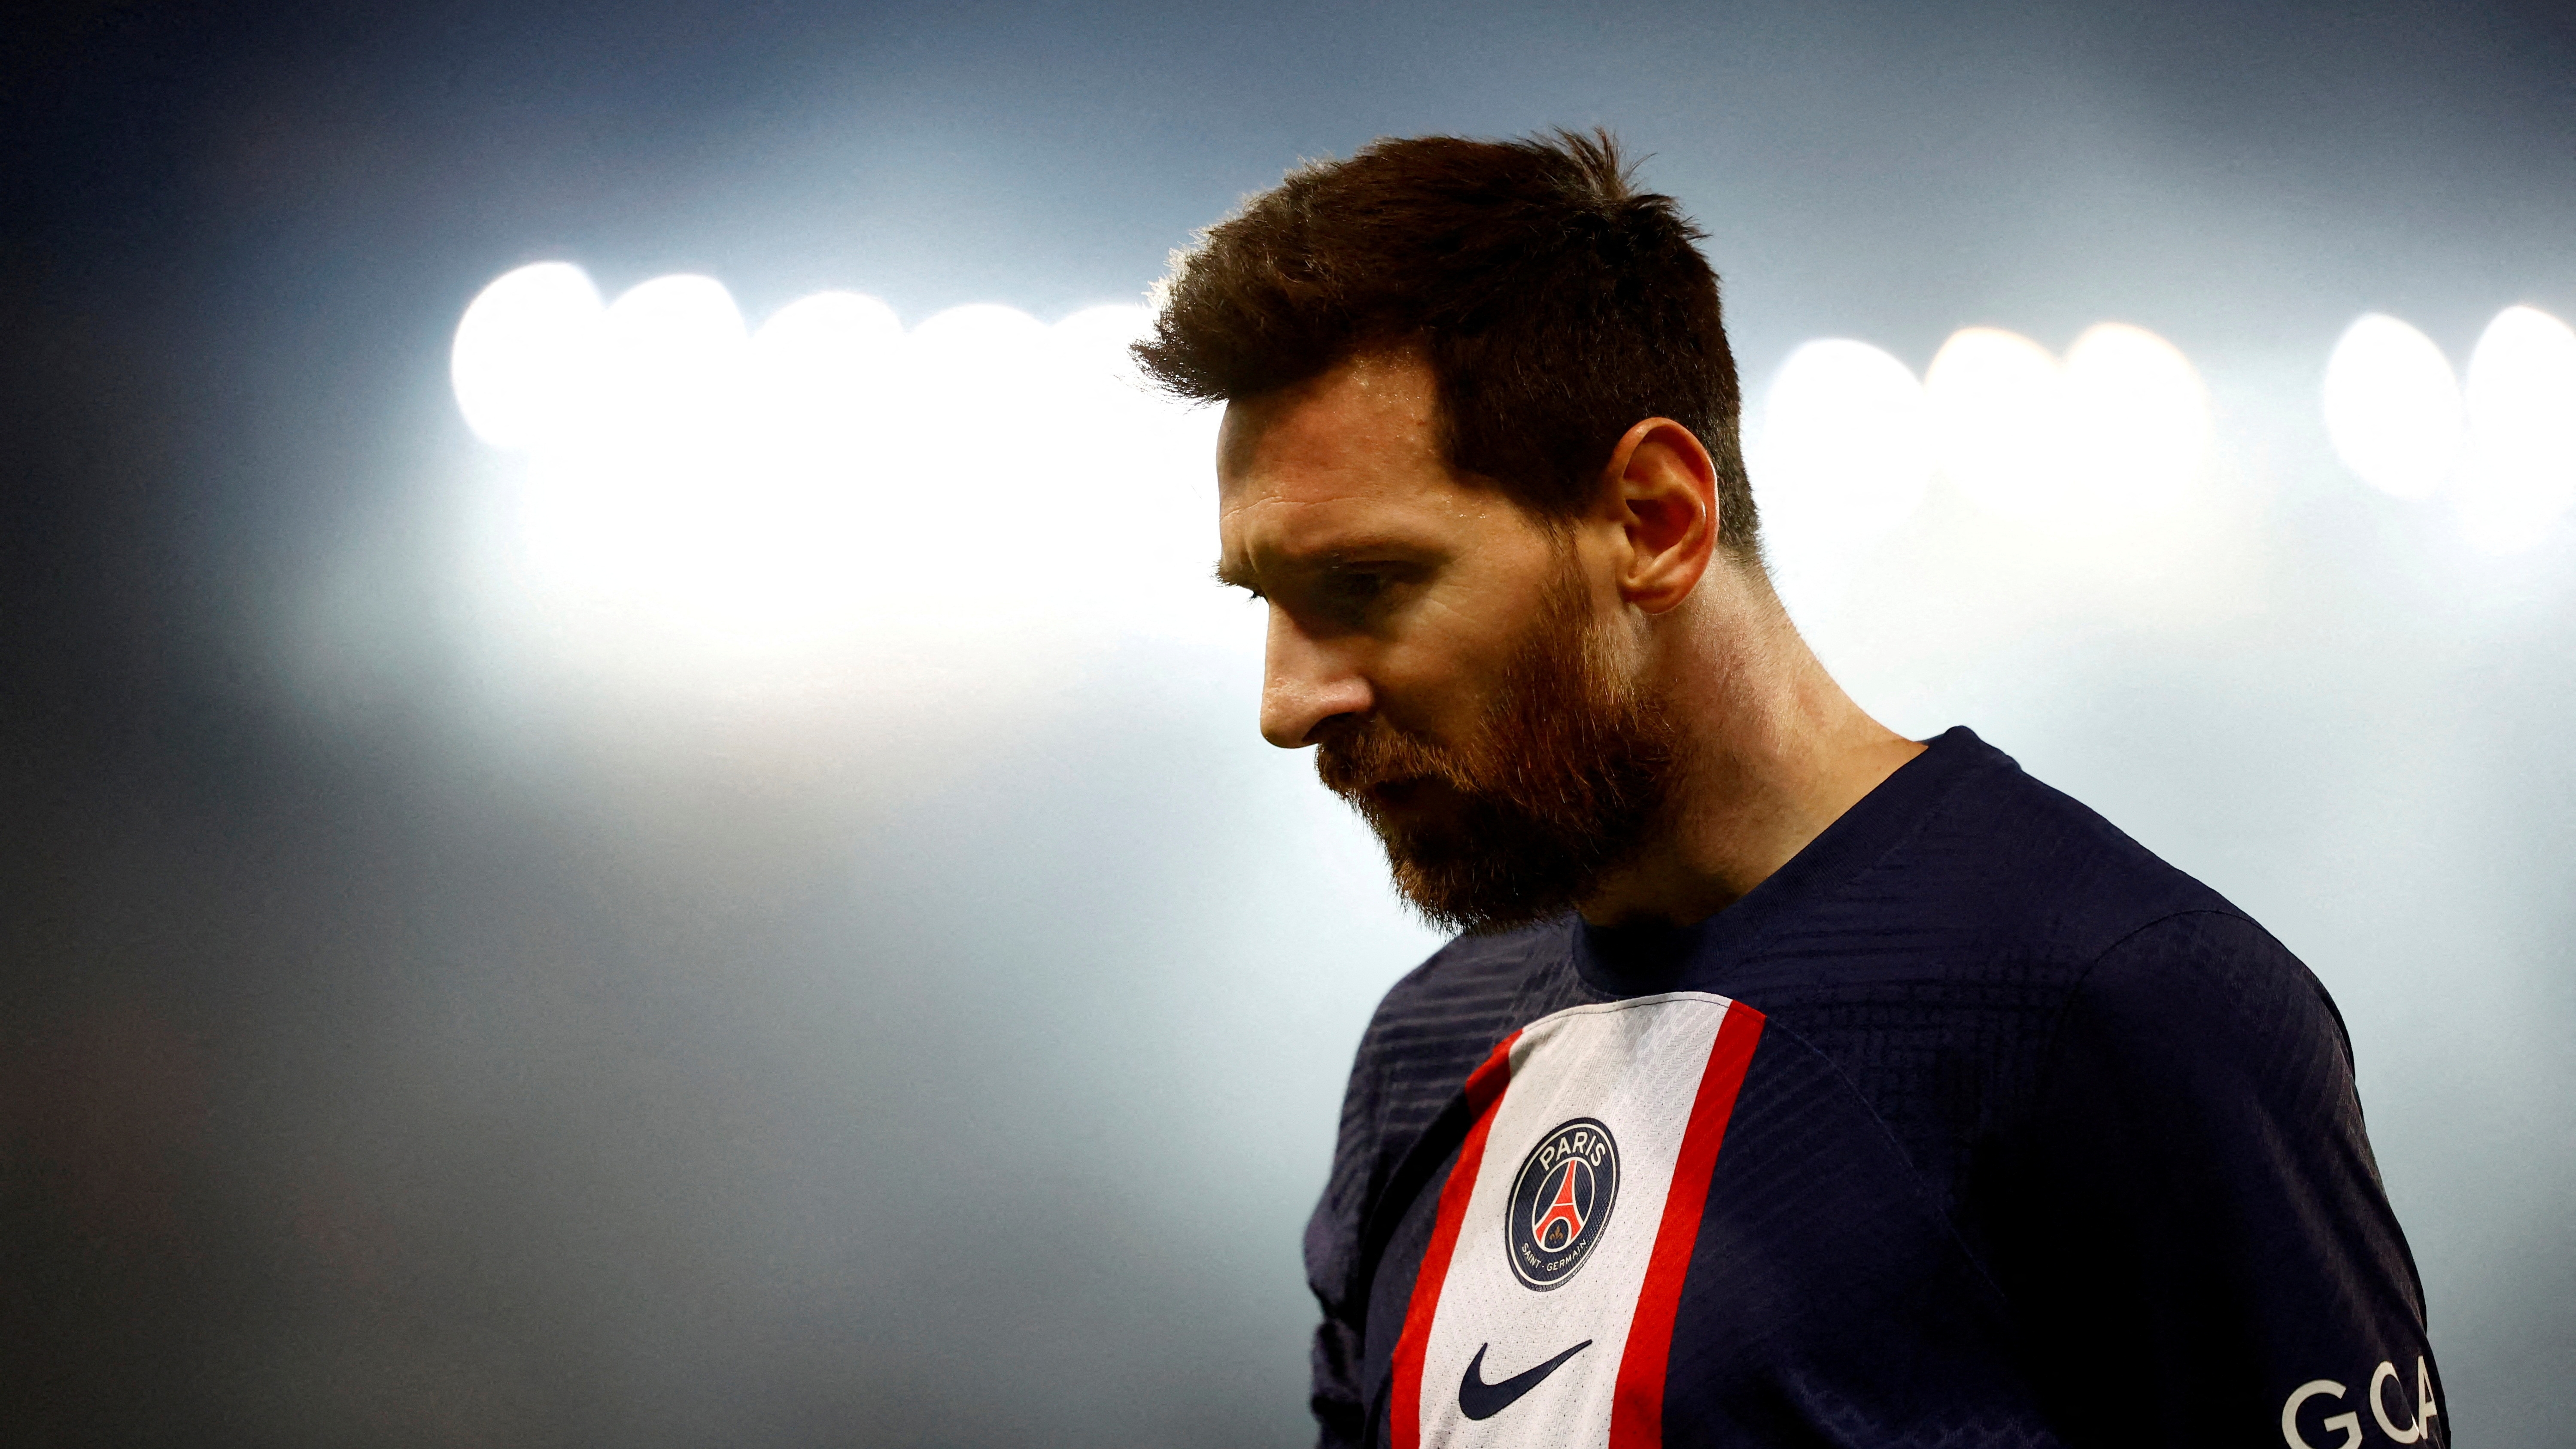 Lionel Messi's future remains uncertain (REUTERS/Sarah Meyssonnier)